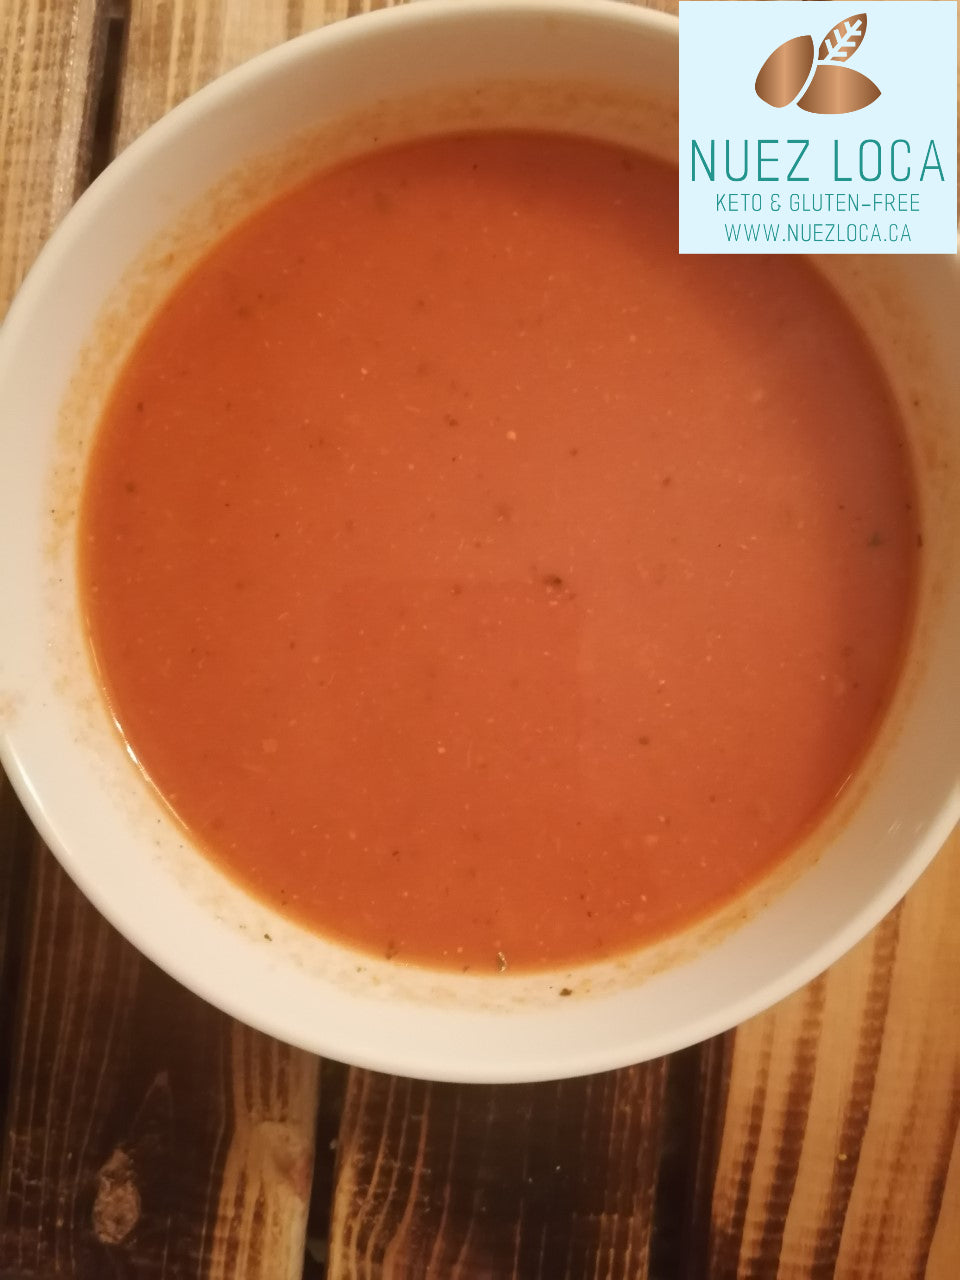 Nuez Loca Sugar Free/Gluten Free Soups